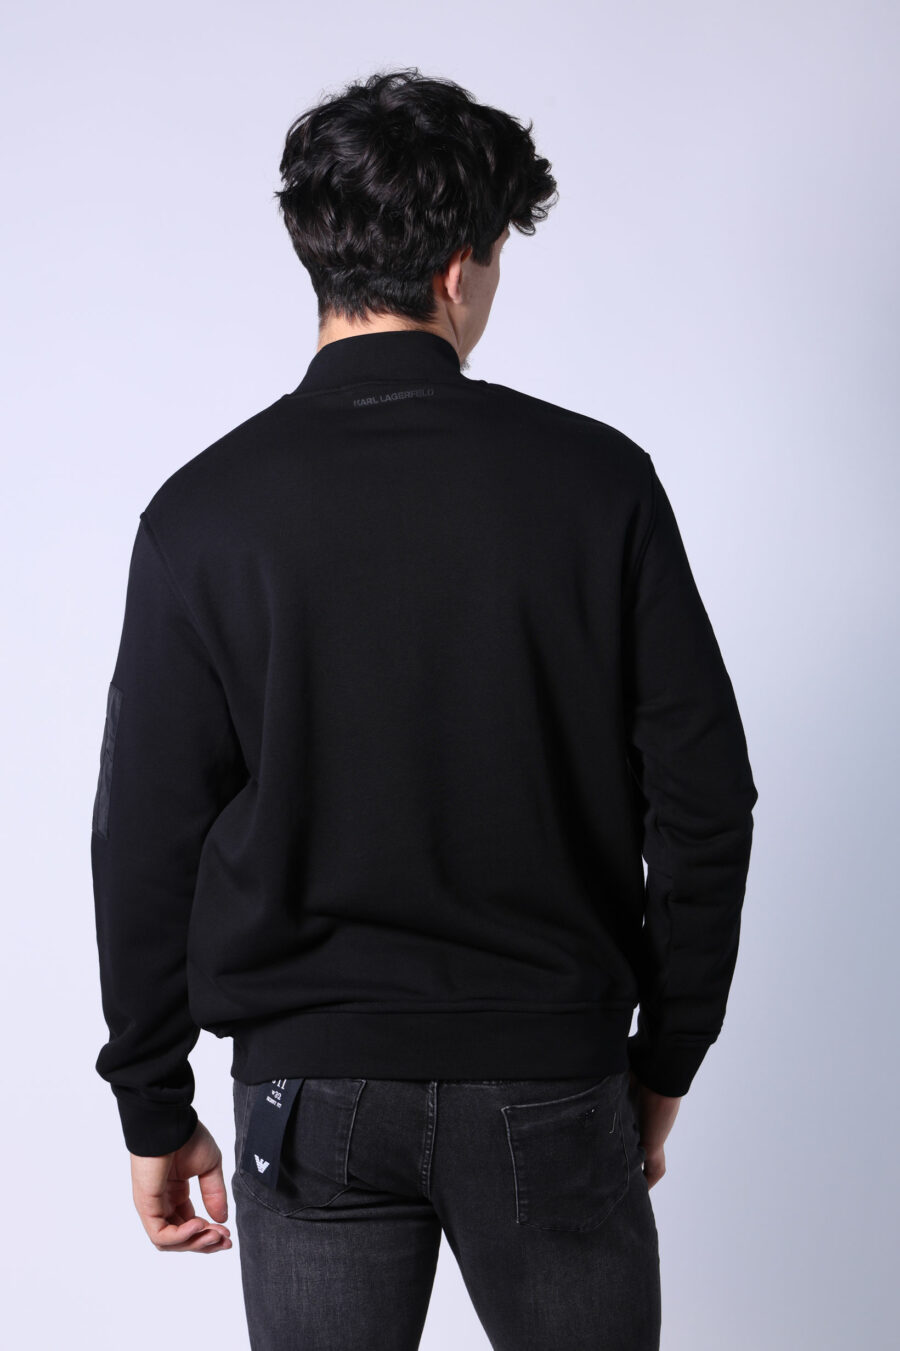 Schwarze Jacke mit Mini-Logo auf Abzeichen und Ärmeltaschen - Untitled Catalog 05734